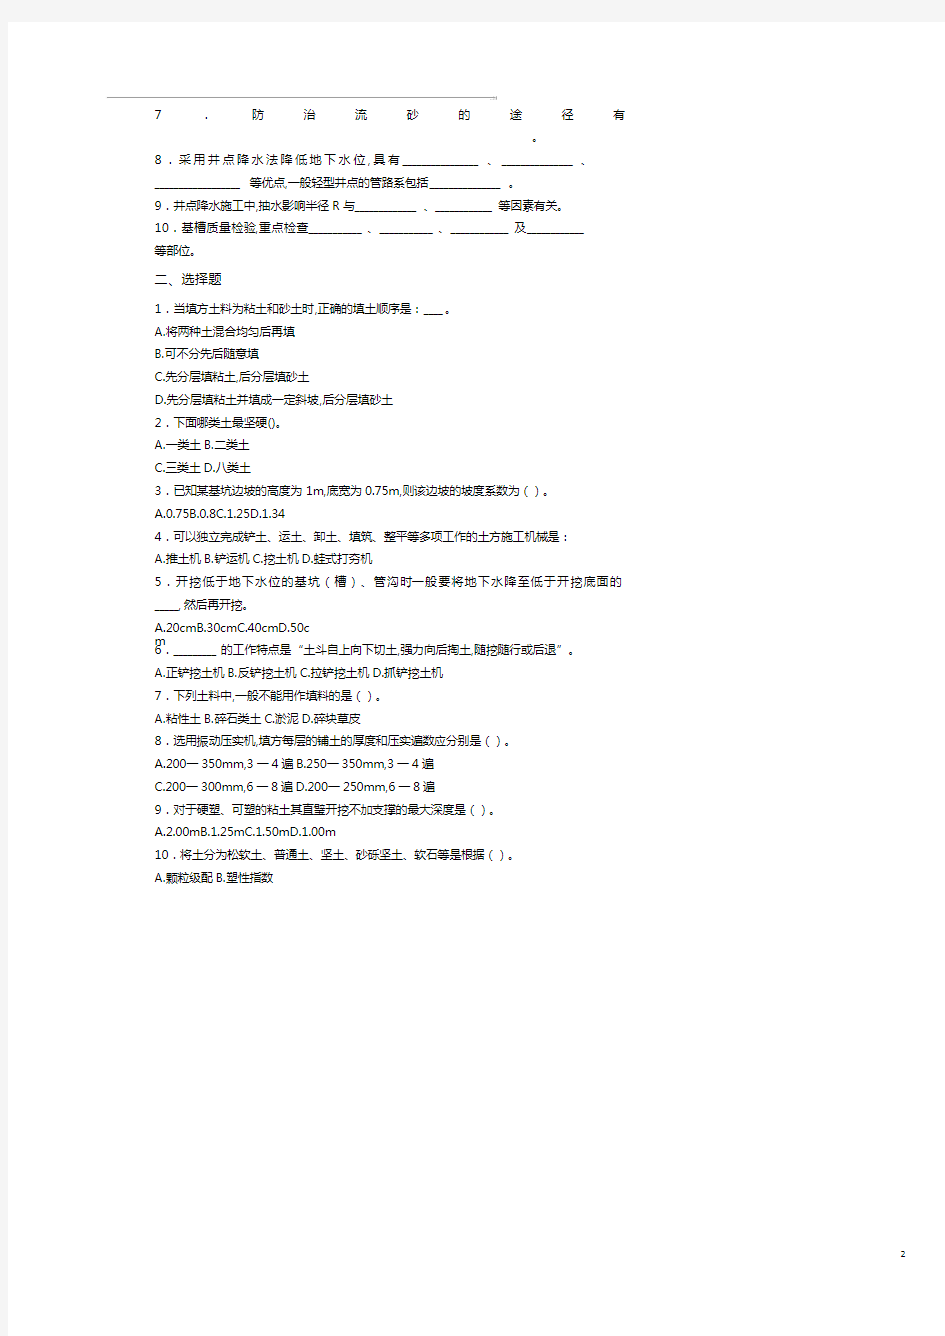 土木工程施工习题库.pdf